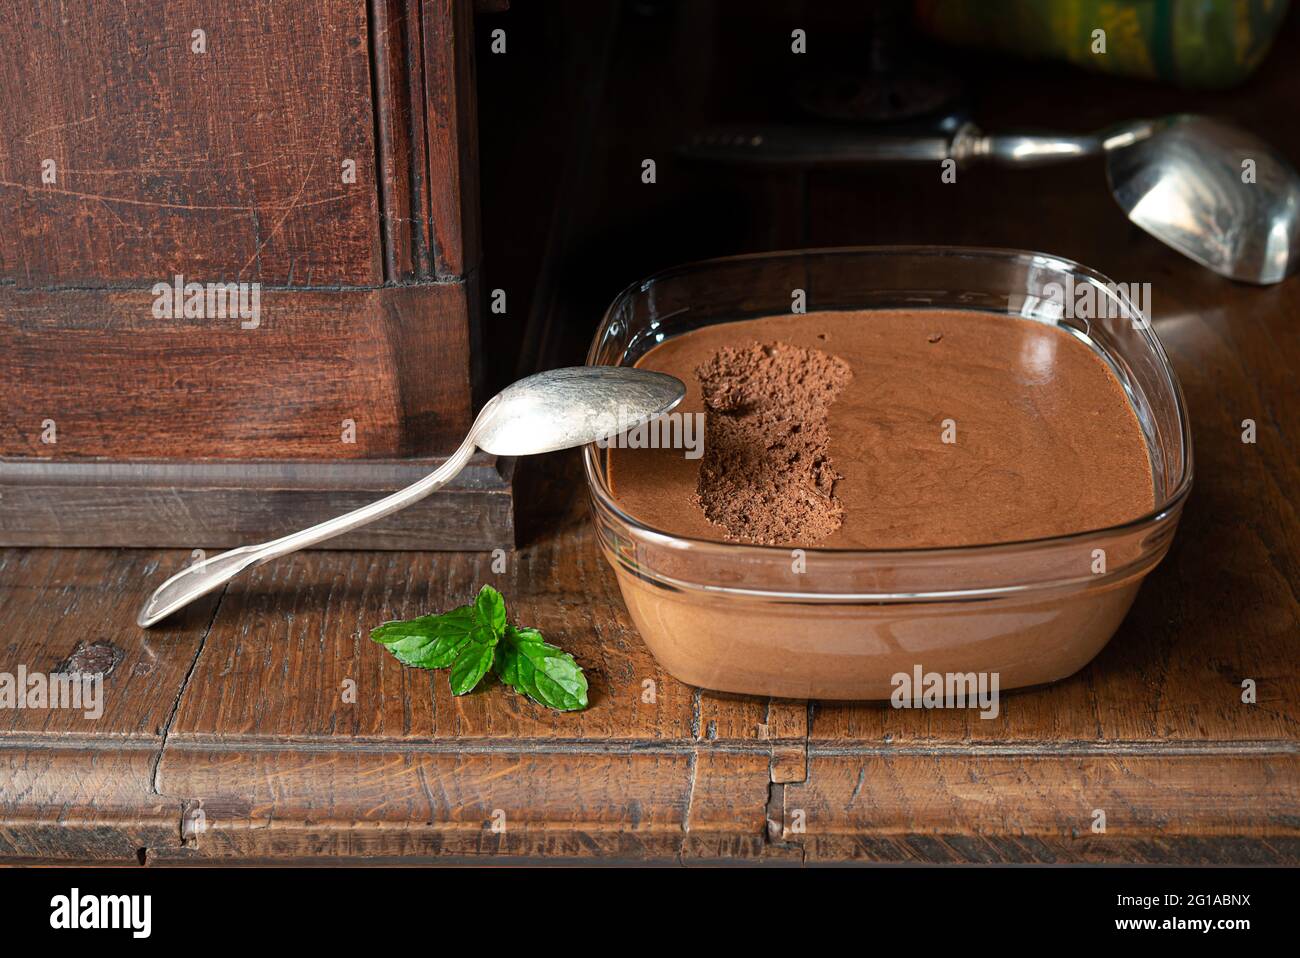 Ciotola trasparente con mousse al cioccolato francese tradizionale su una vecchia sponda in legno Foto Stock